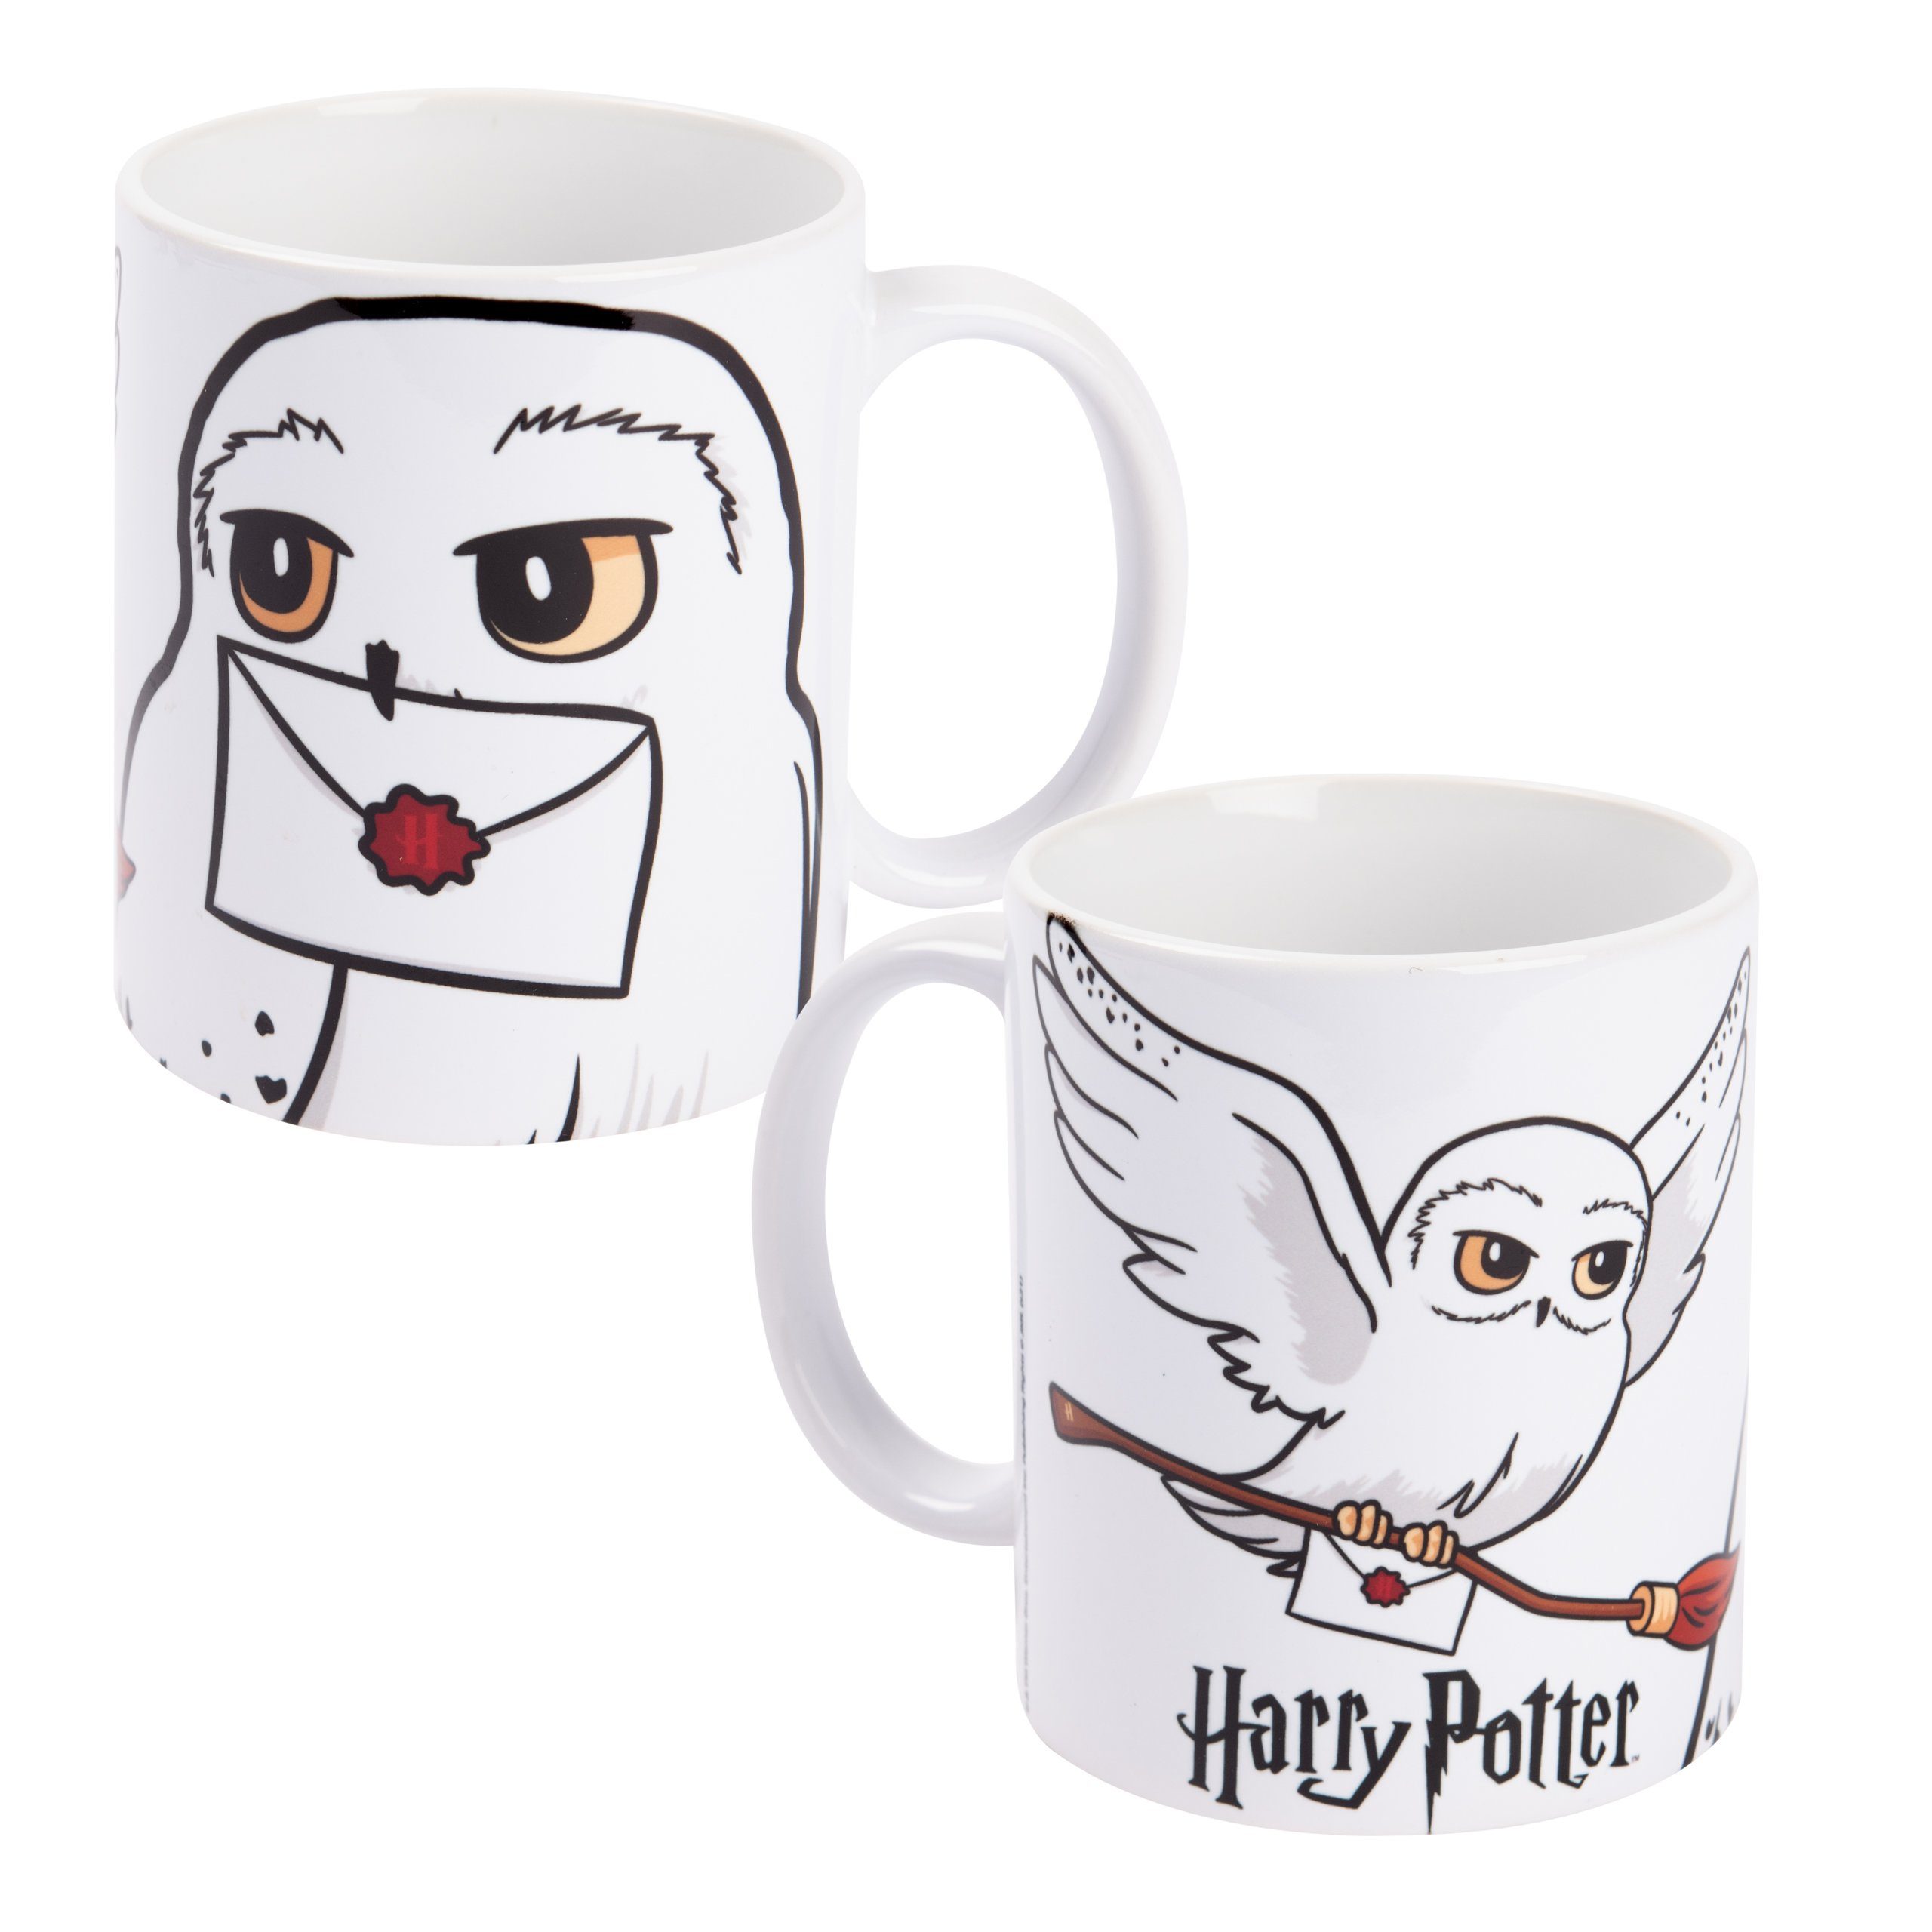 United Labels® Tasse Harry Potter Tasse - Hedwig Kaffeetasse aus Keramik Weiß 320 ml, Keramik